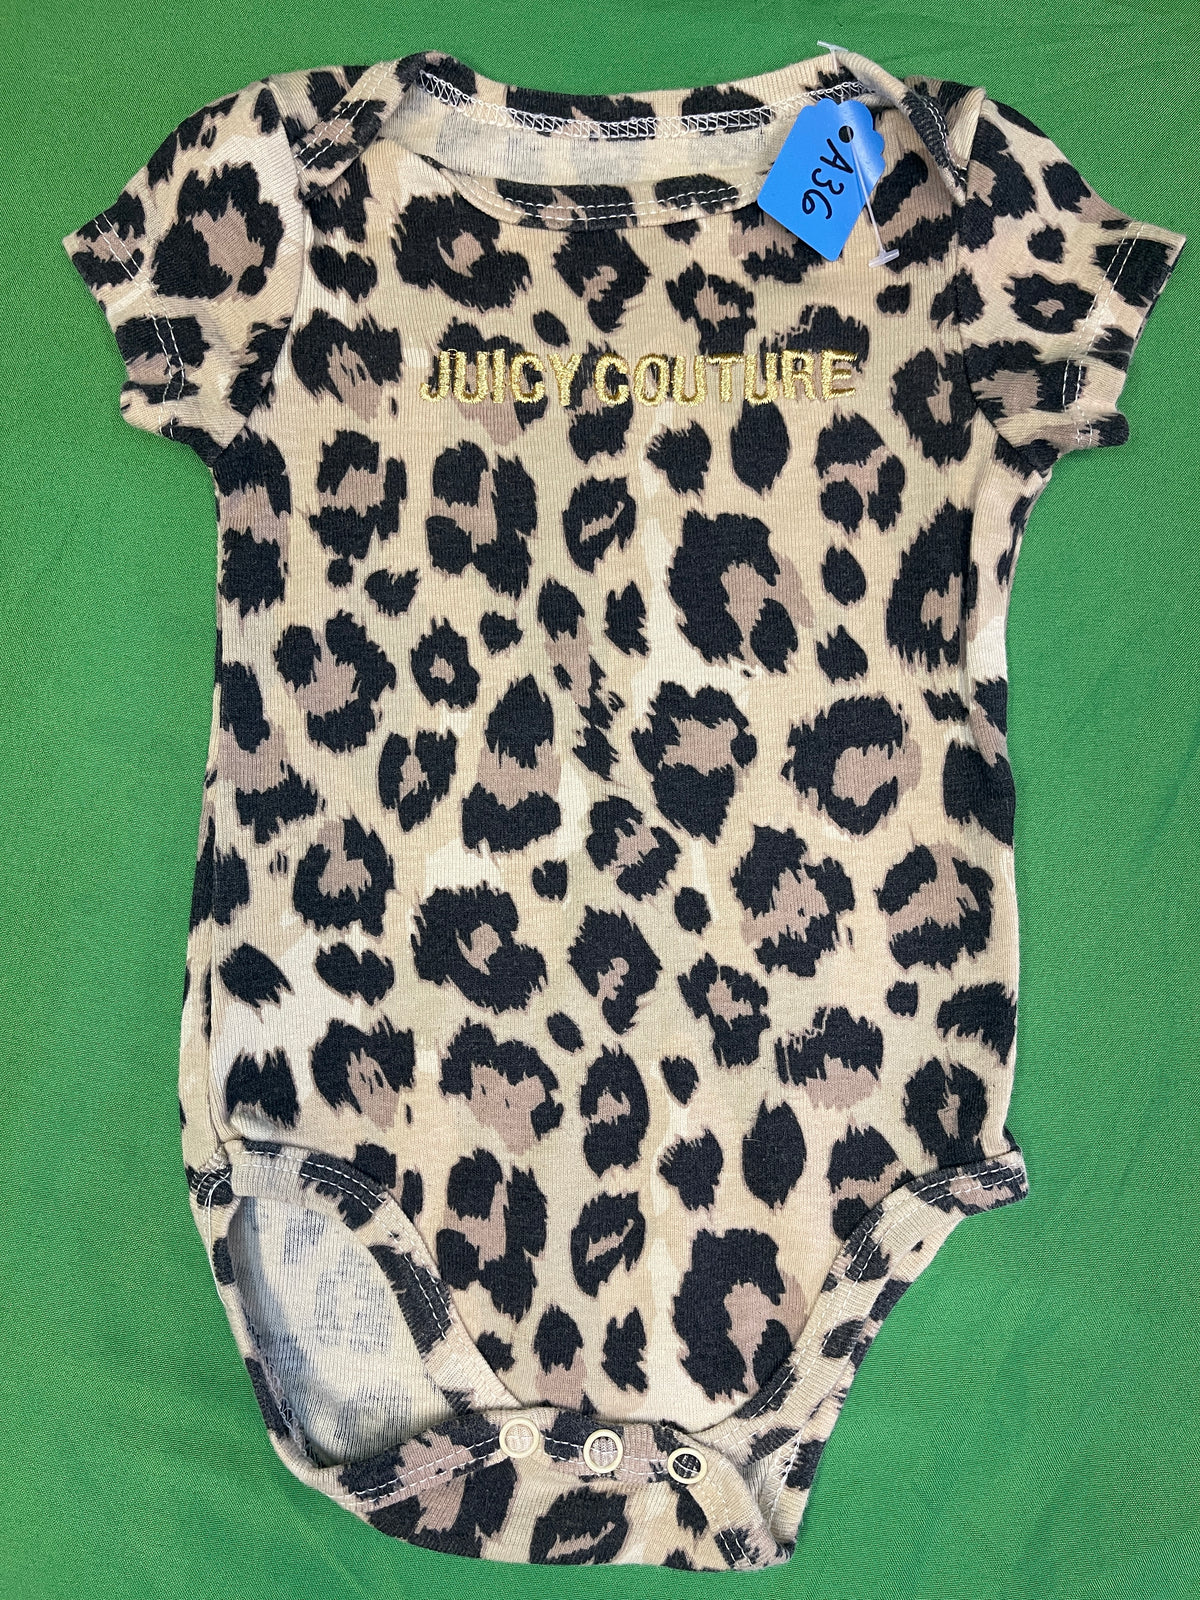 Juicy Couture Leopard Print Bodysuit/Vest Infant Baby 3-6 Months